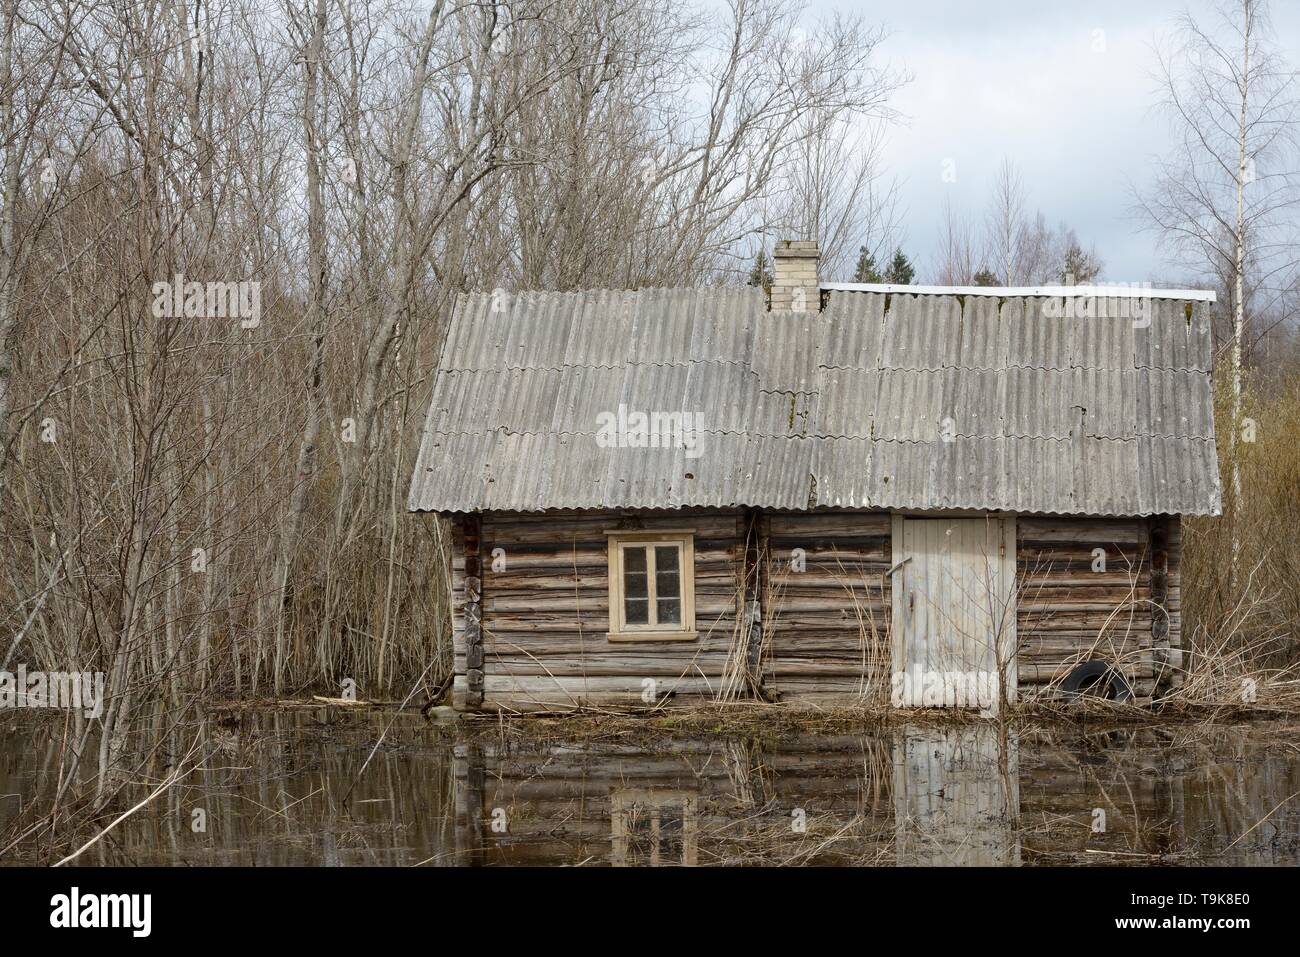 Abandonnés, abandonnés à woodland cottage inondés par le castor d'Eurasie (Castor fiber) l'endiguement d'une rivière à proximité, près de l'Iisaku, comté d'Ida-Viru, l'Estonie, l'Apri Banque D'Images